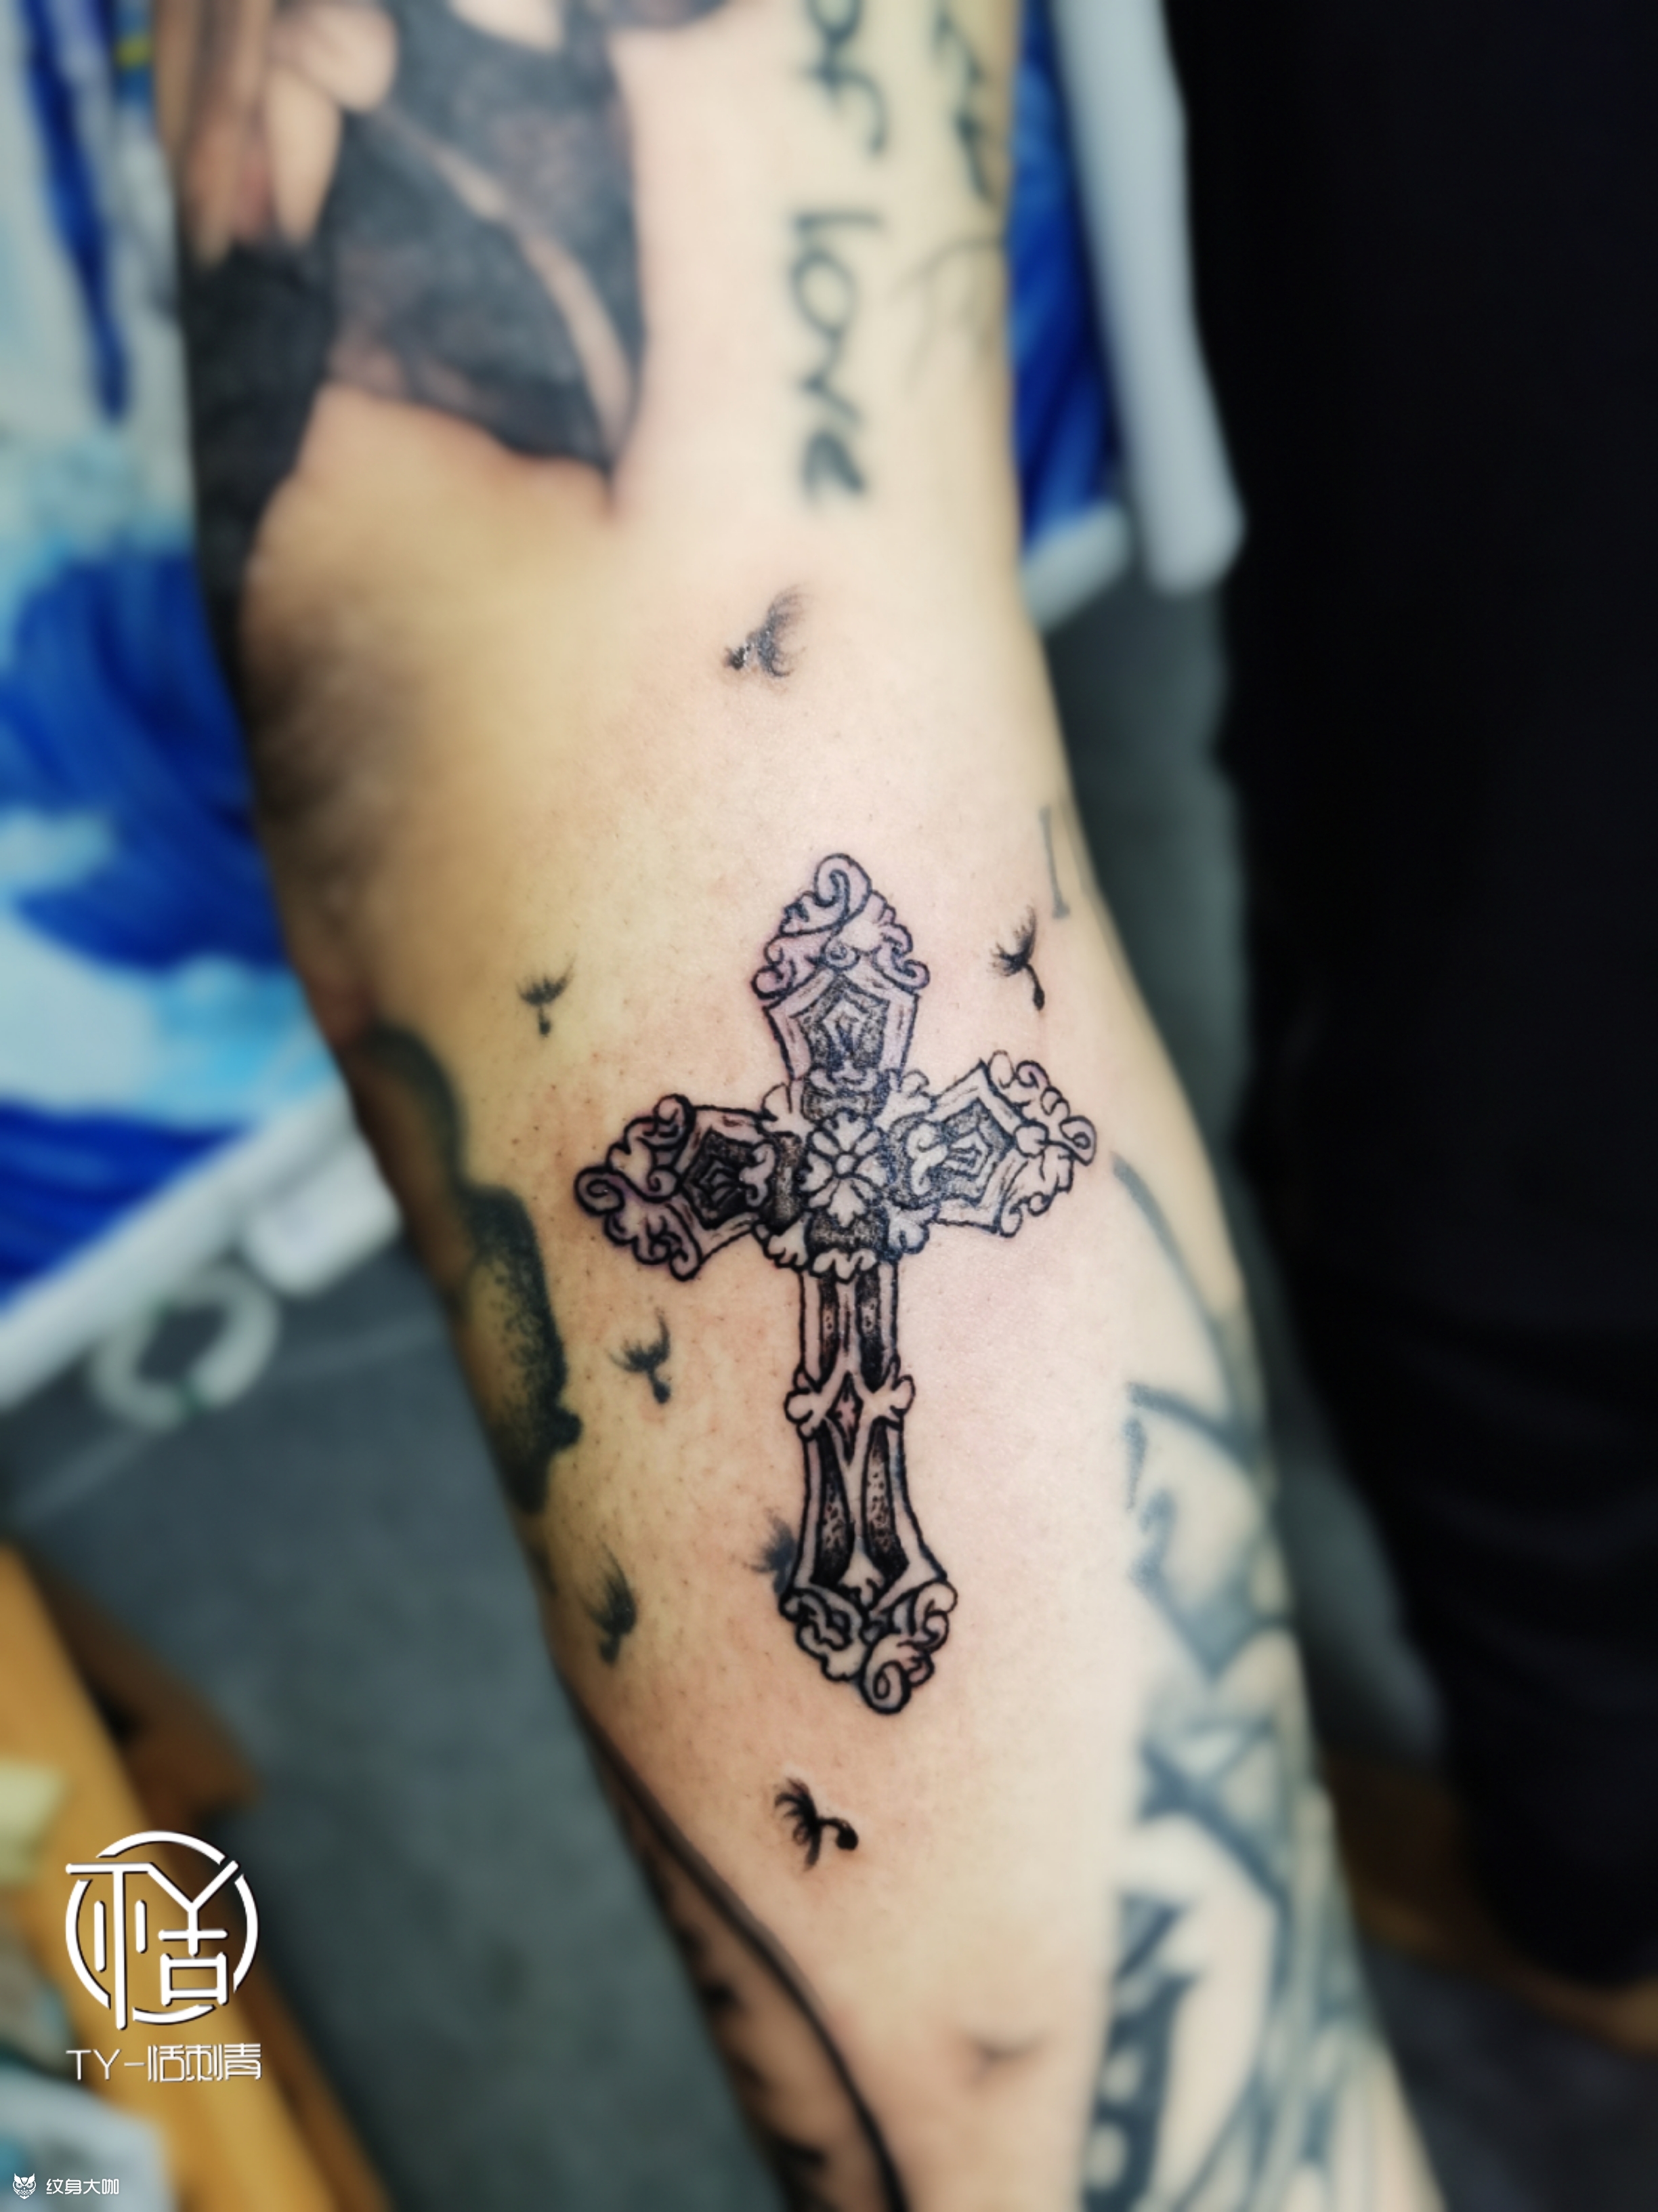 克罗心十字架纹身图案图片